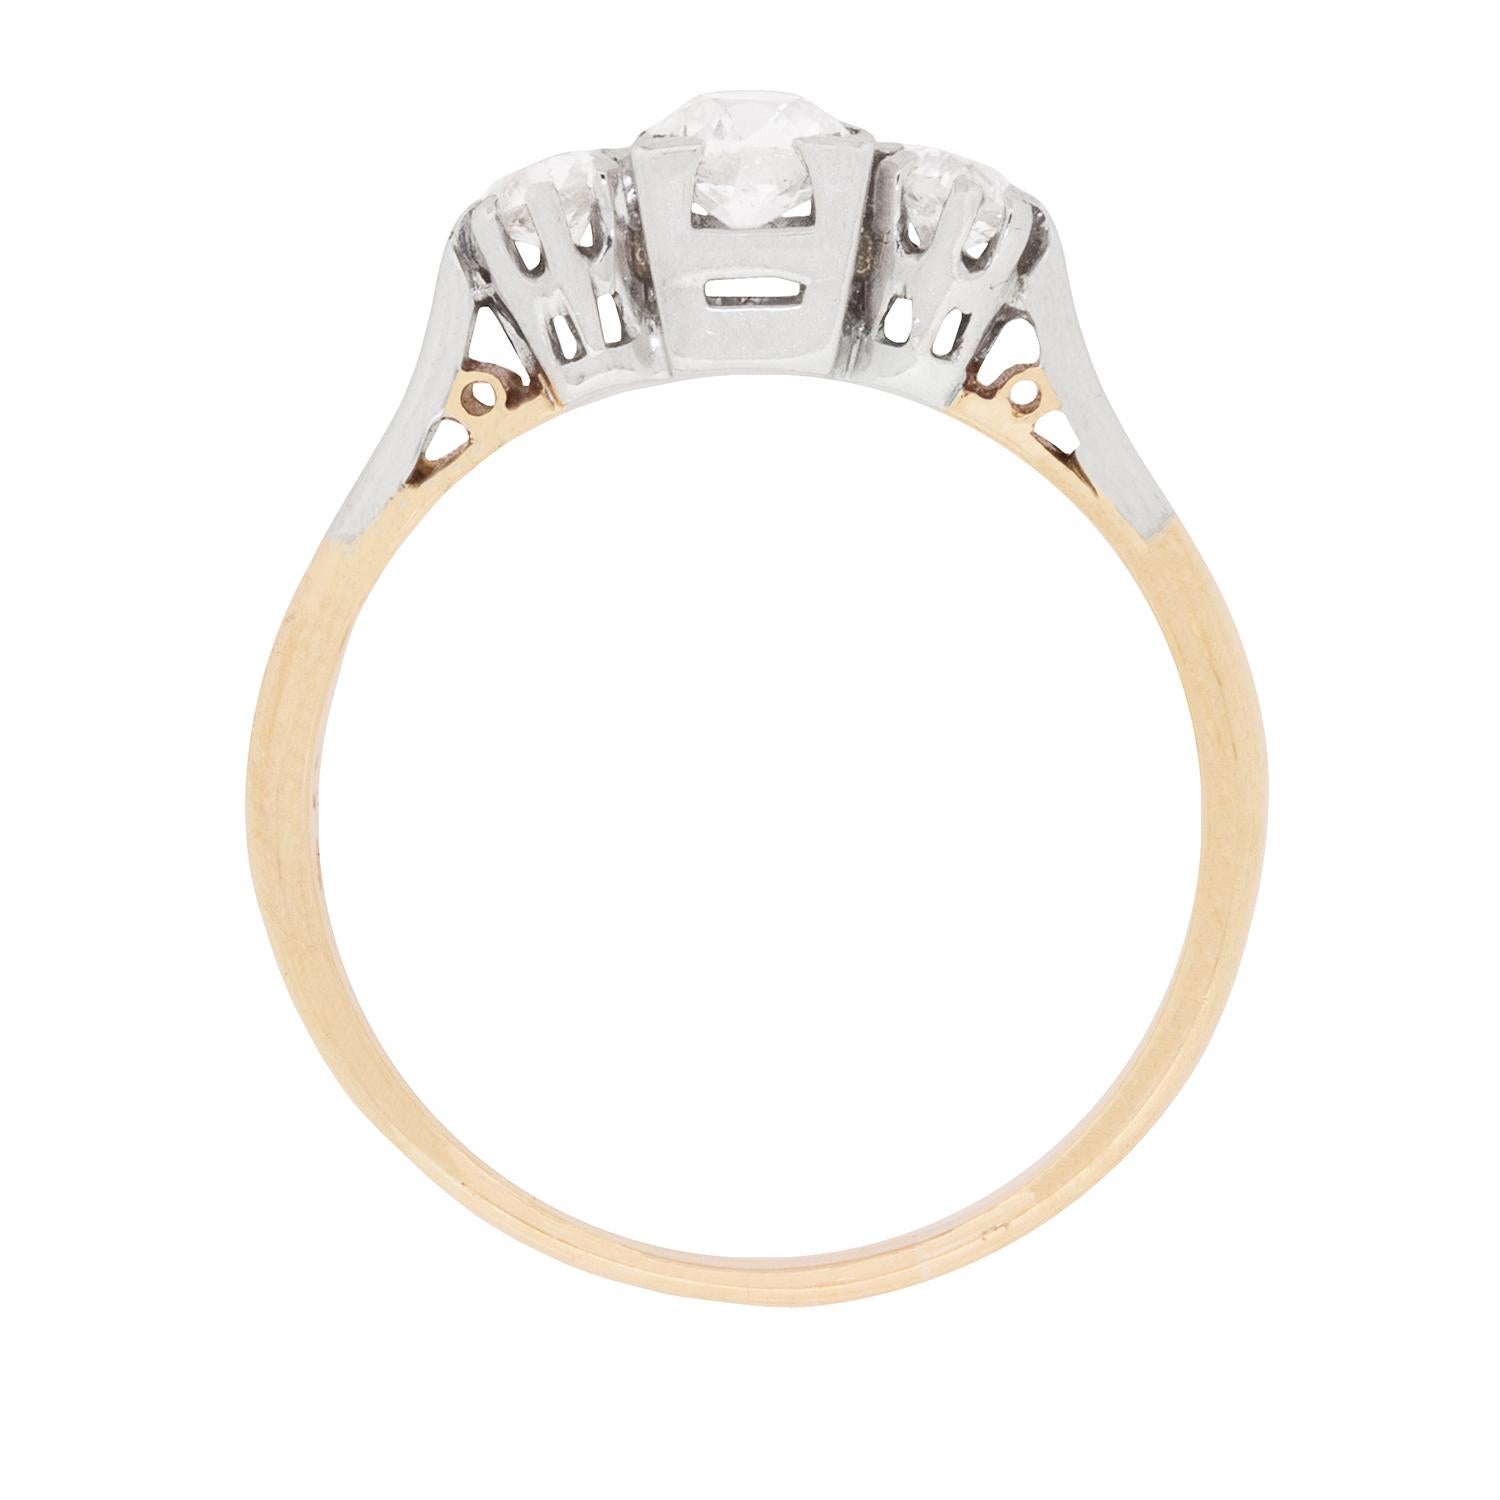 Dieser um 1900 gefertigte Ring aus 18 Karat Gelbgold und Platin funkelt mit 0,60 Karat Diamanten im Altschliff und ist die beliebteste Kombination der viktorianischen Ära.

Die antiken Diamanten, ein Stein von 0,30 Karat in der Mitte des Rings und